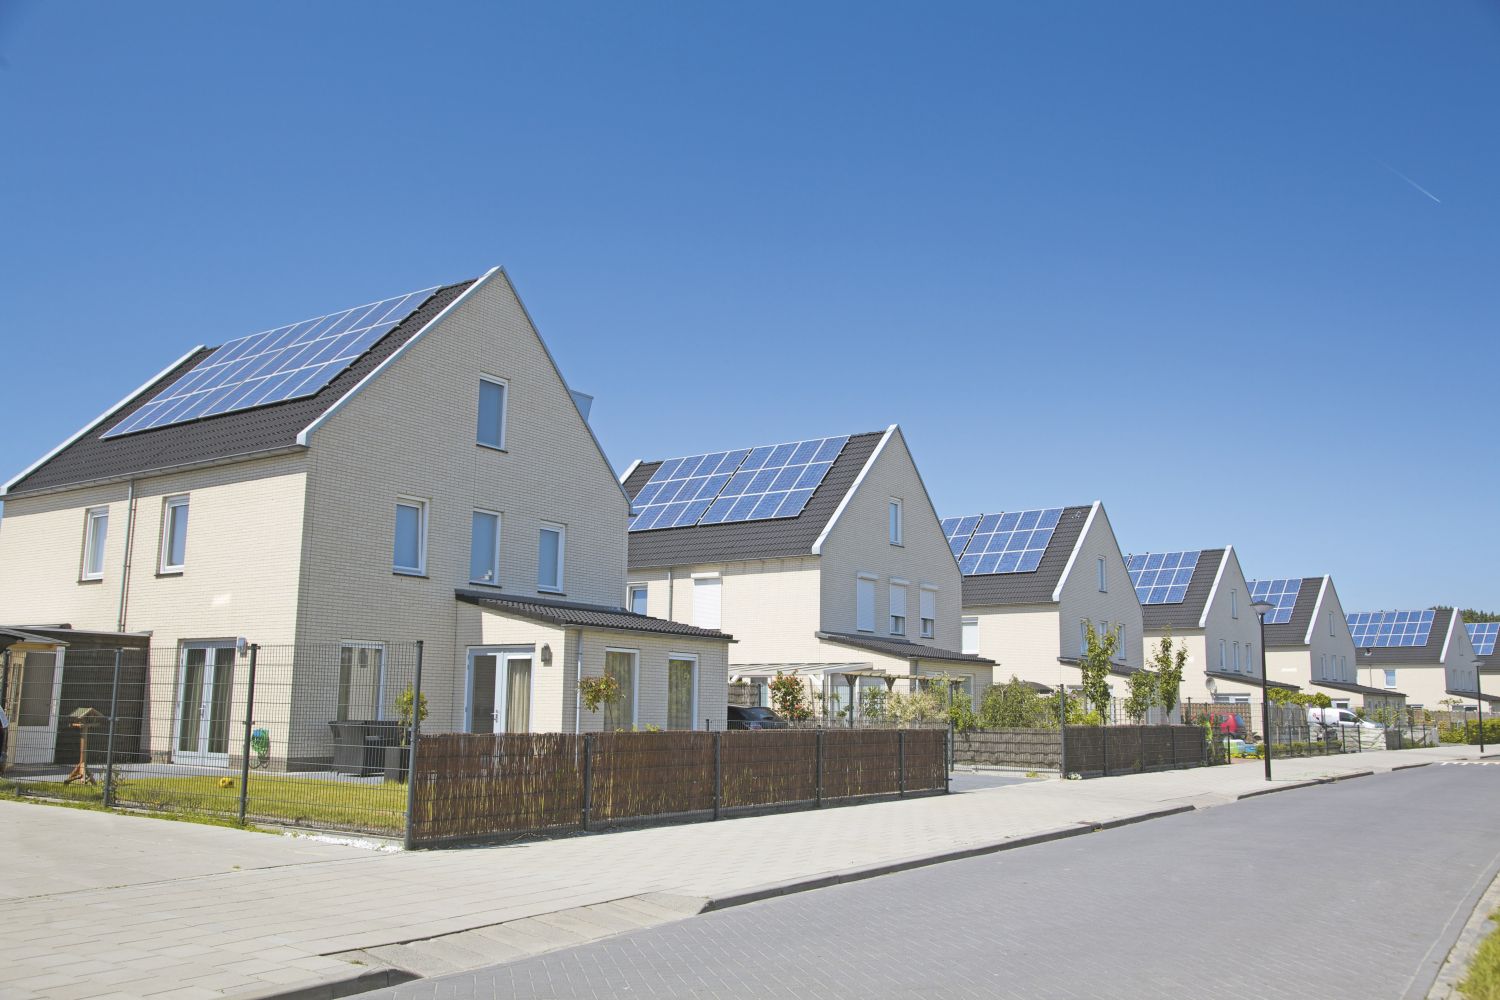  Solaranlagen auf Einzelhausdächern